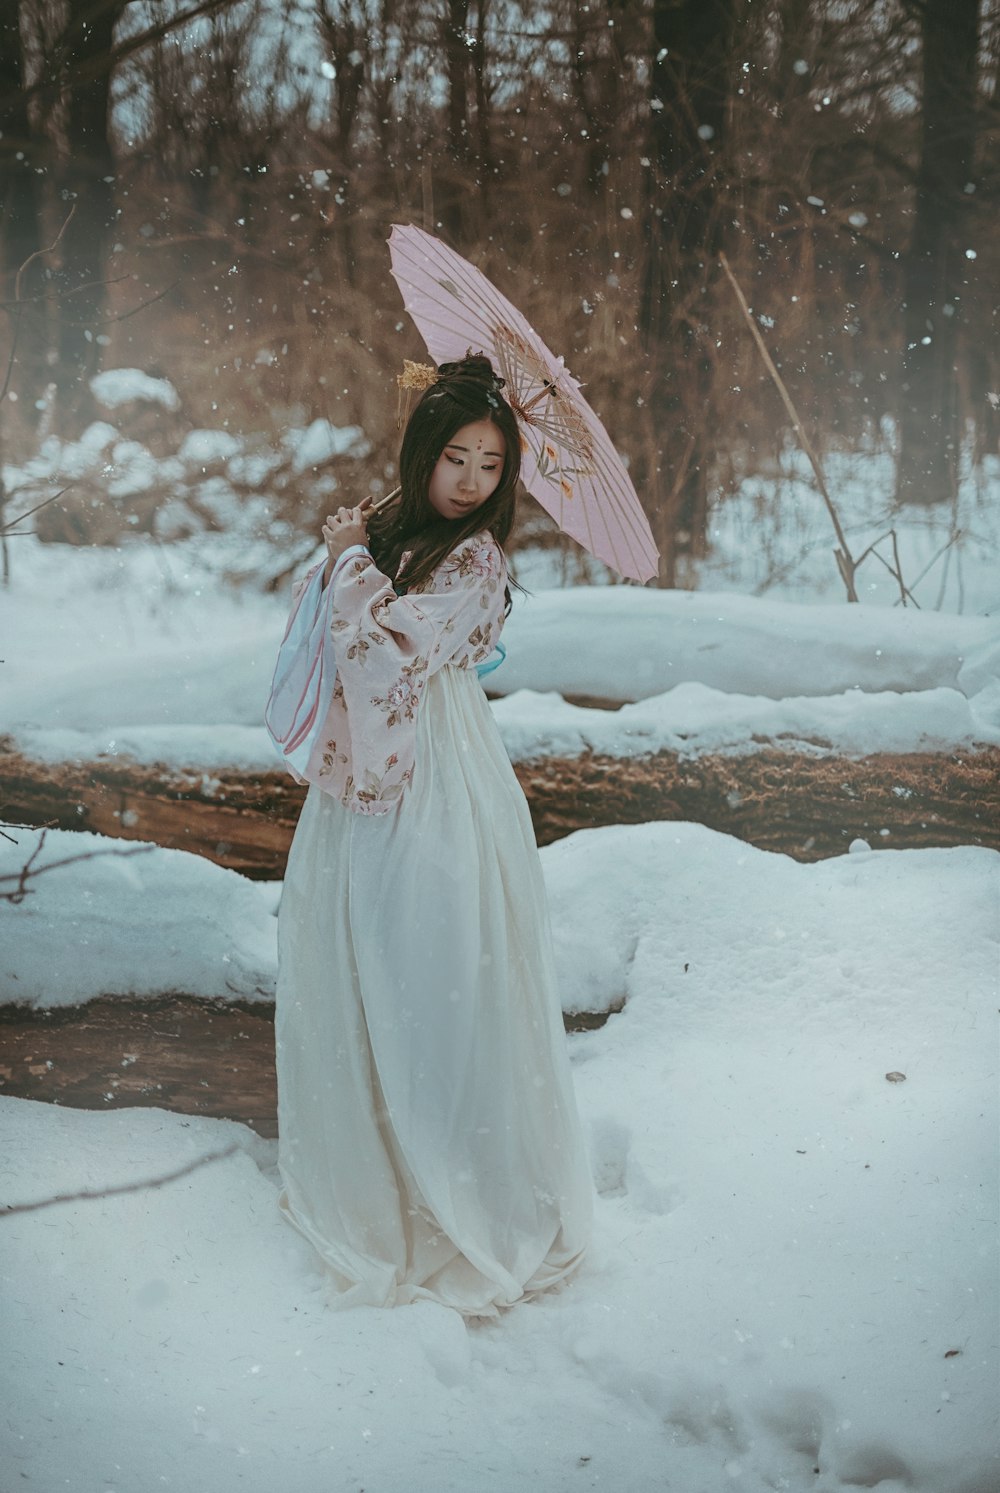 Eine Frau in einem weißen Kleid, die einen Regenschirm im Schnee hält